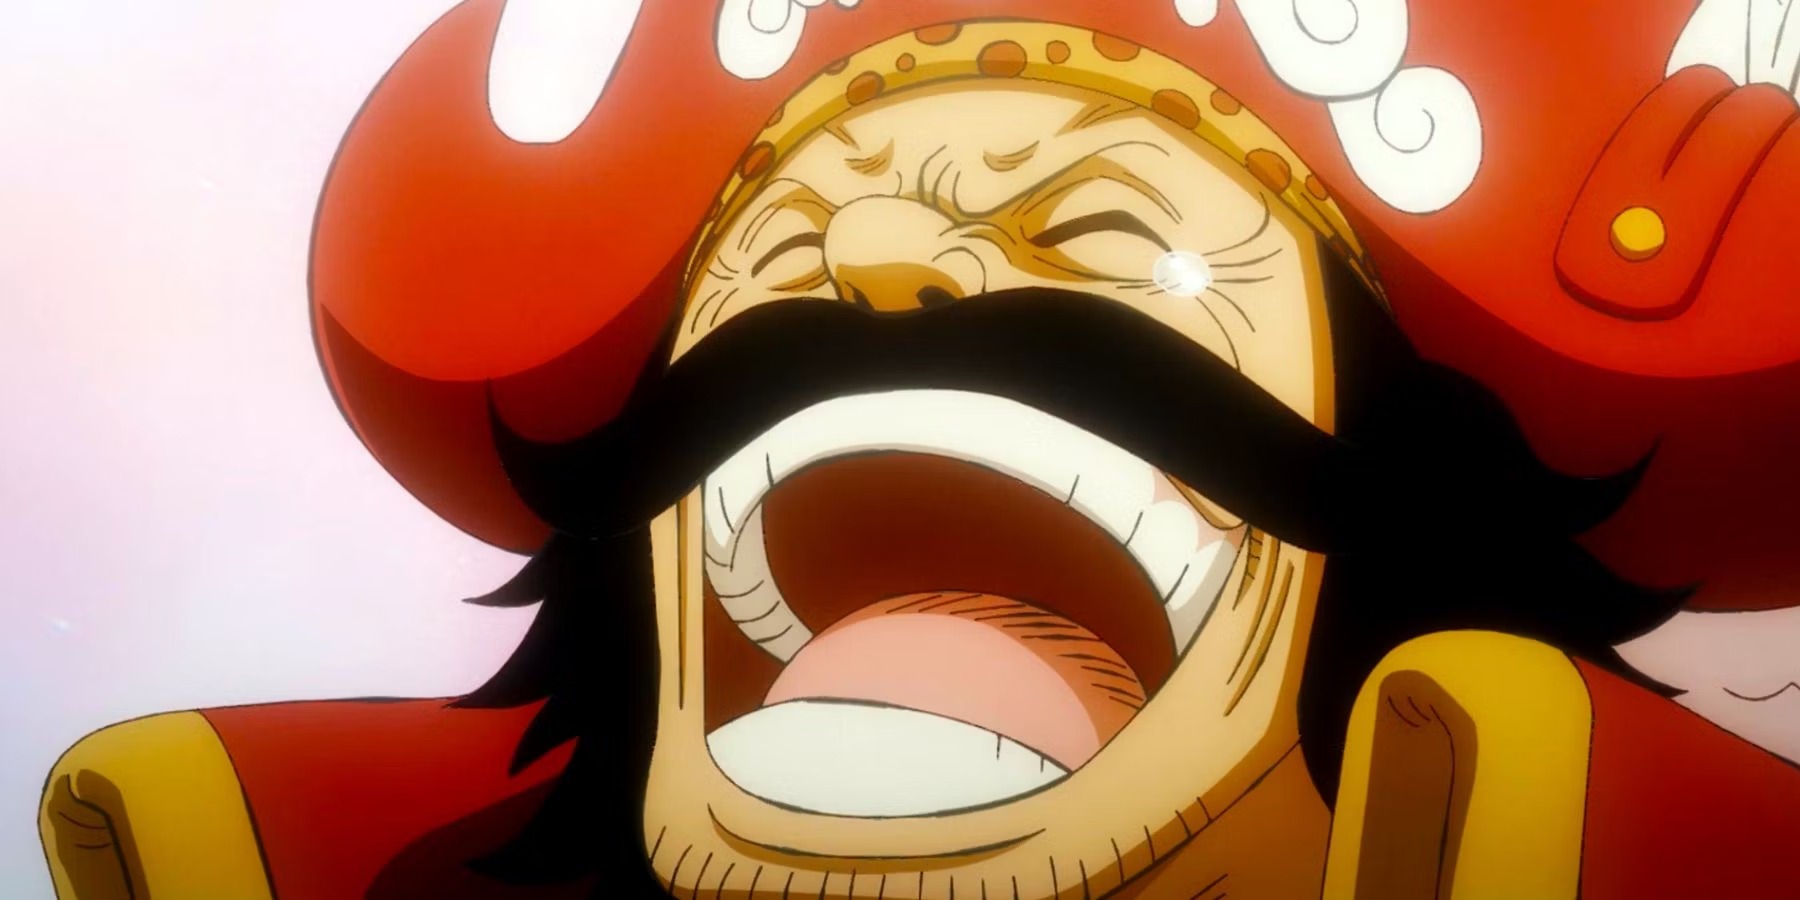 Quanto tempo demoraria para assistir One Piece completamente?